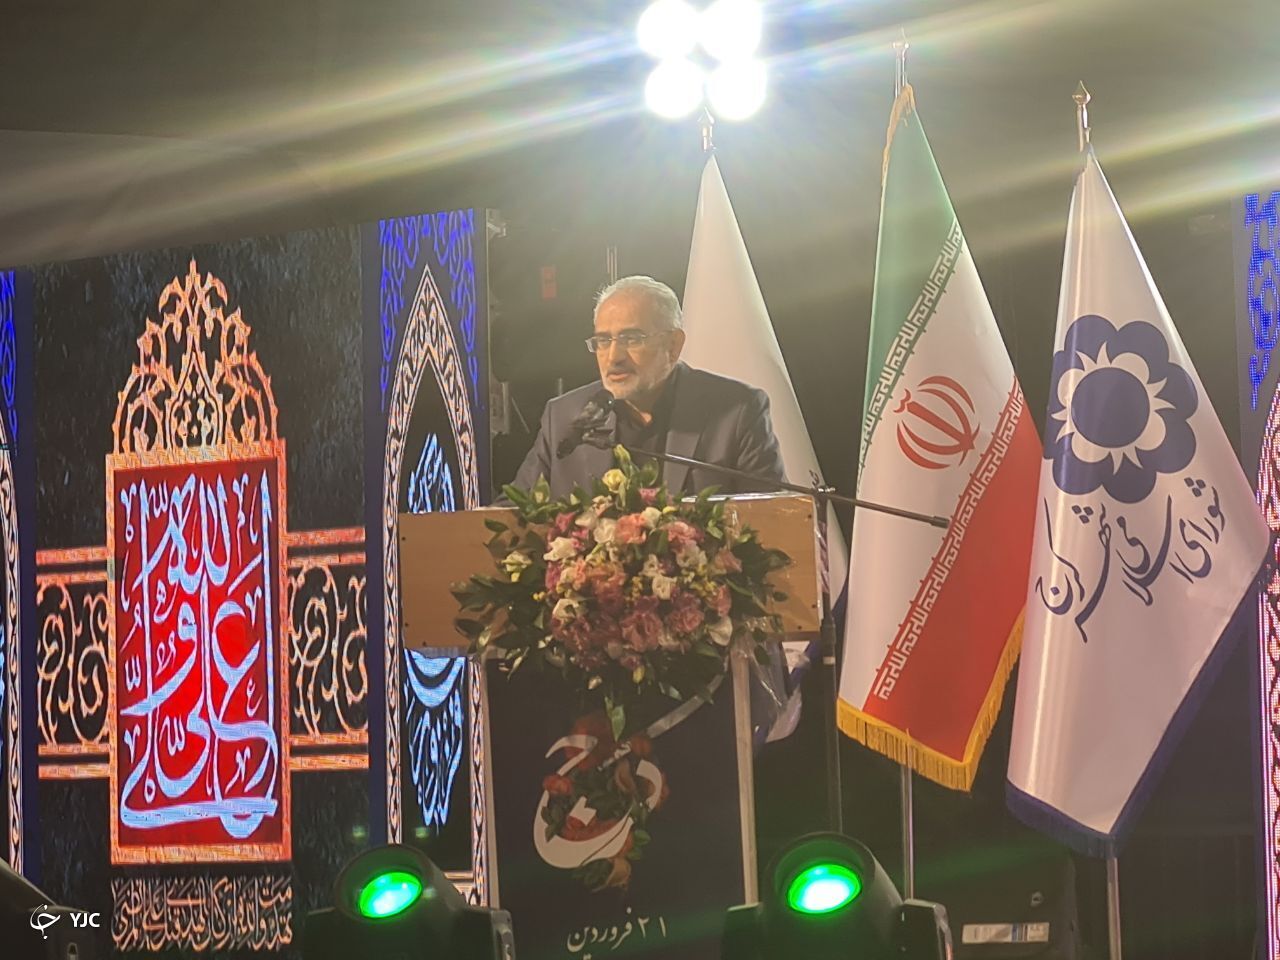 مردم راه خود را از دشمنان جدا کردند/ کرج نماد وحدت ایران است